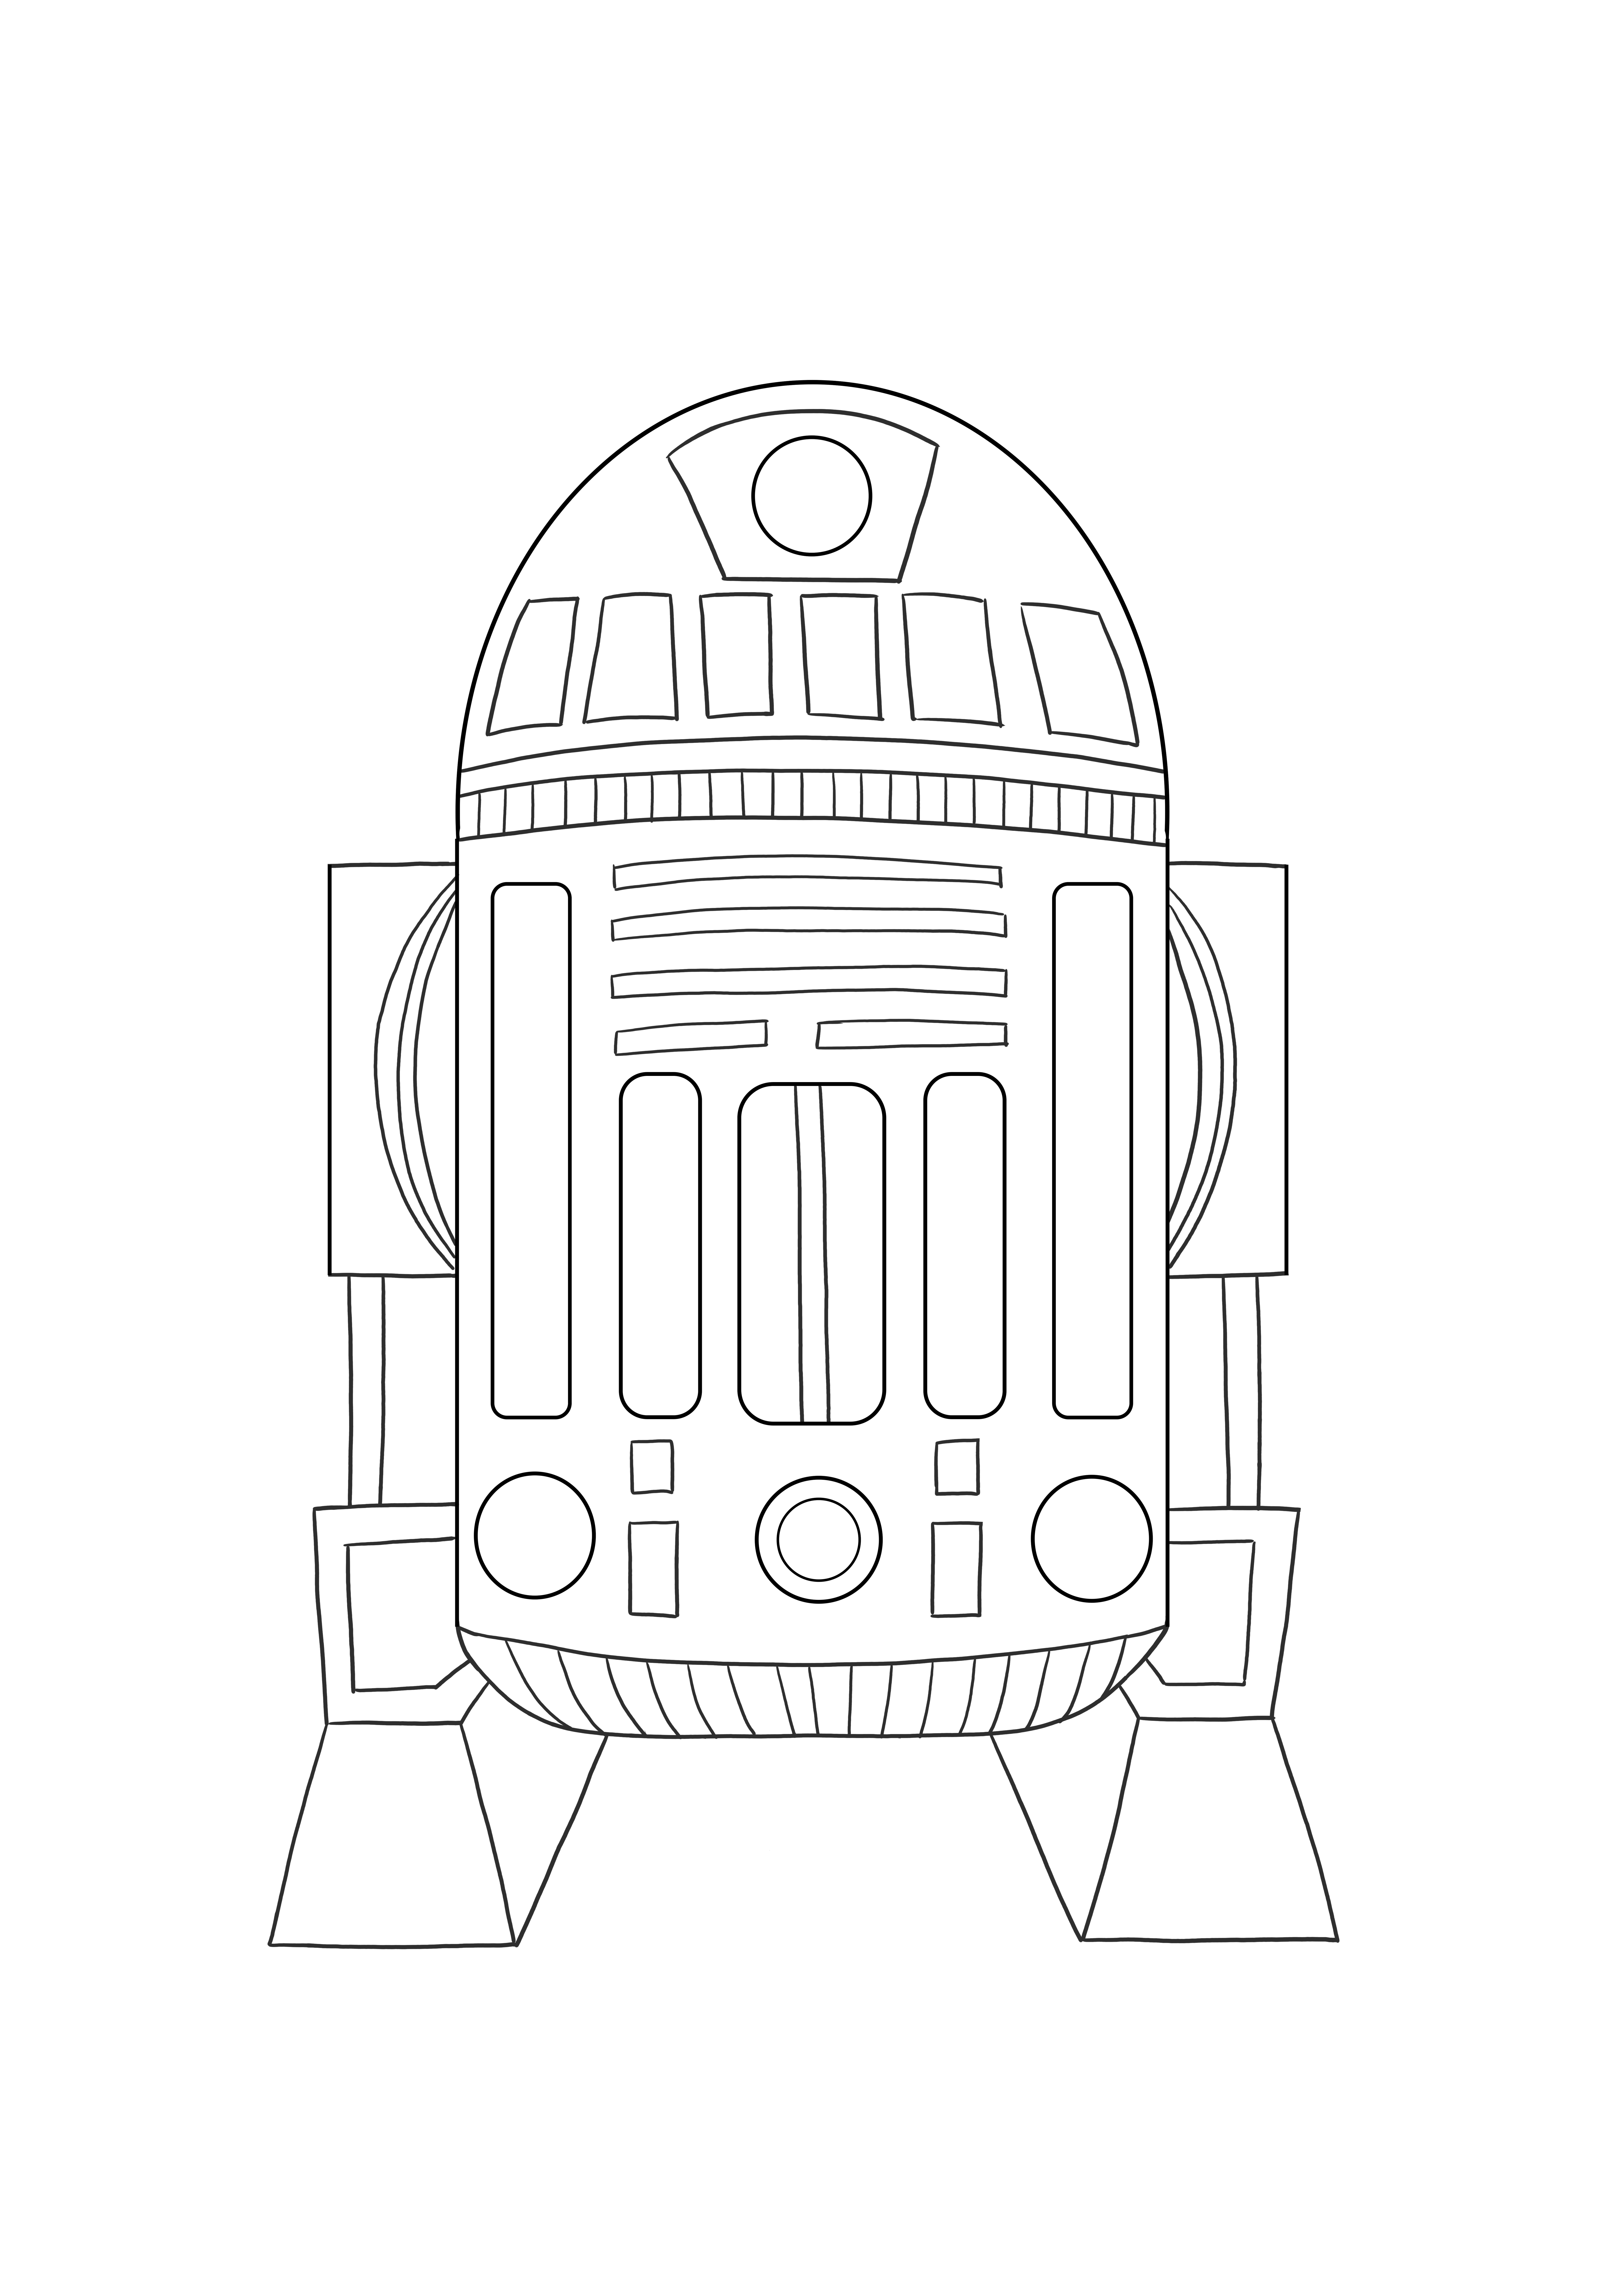 Astromed droid R2 imagine imprimabilă gratuită pentru a colora pentru copii